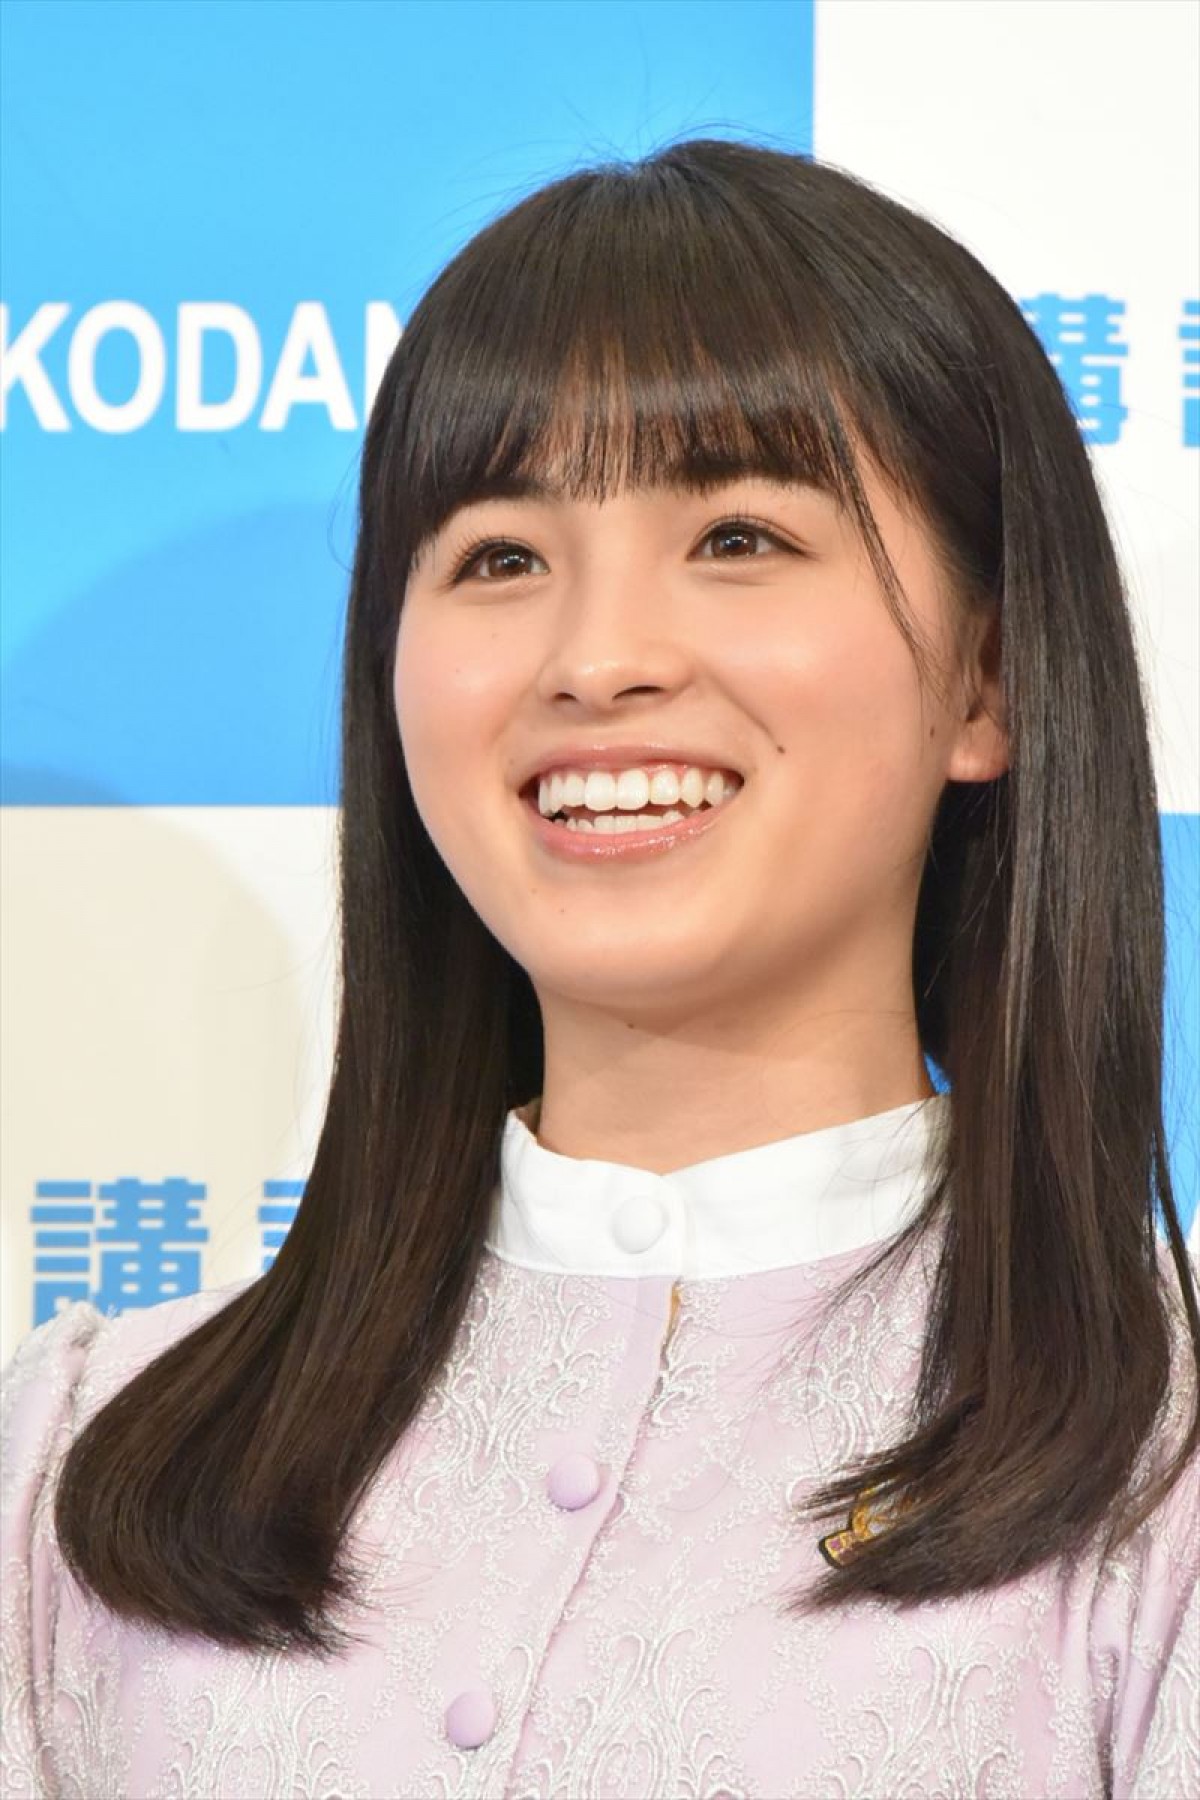 乃木坂46・大園桃子のブログが話題に　ファン「泣いた」 白石麻衣の卒業への思いつづる